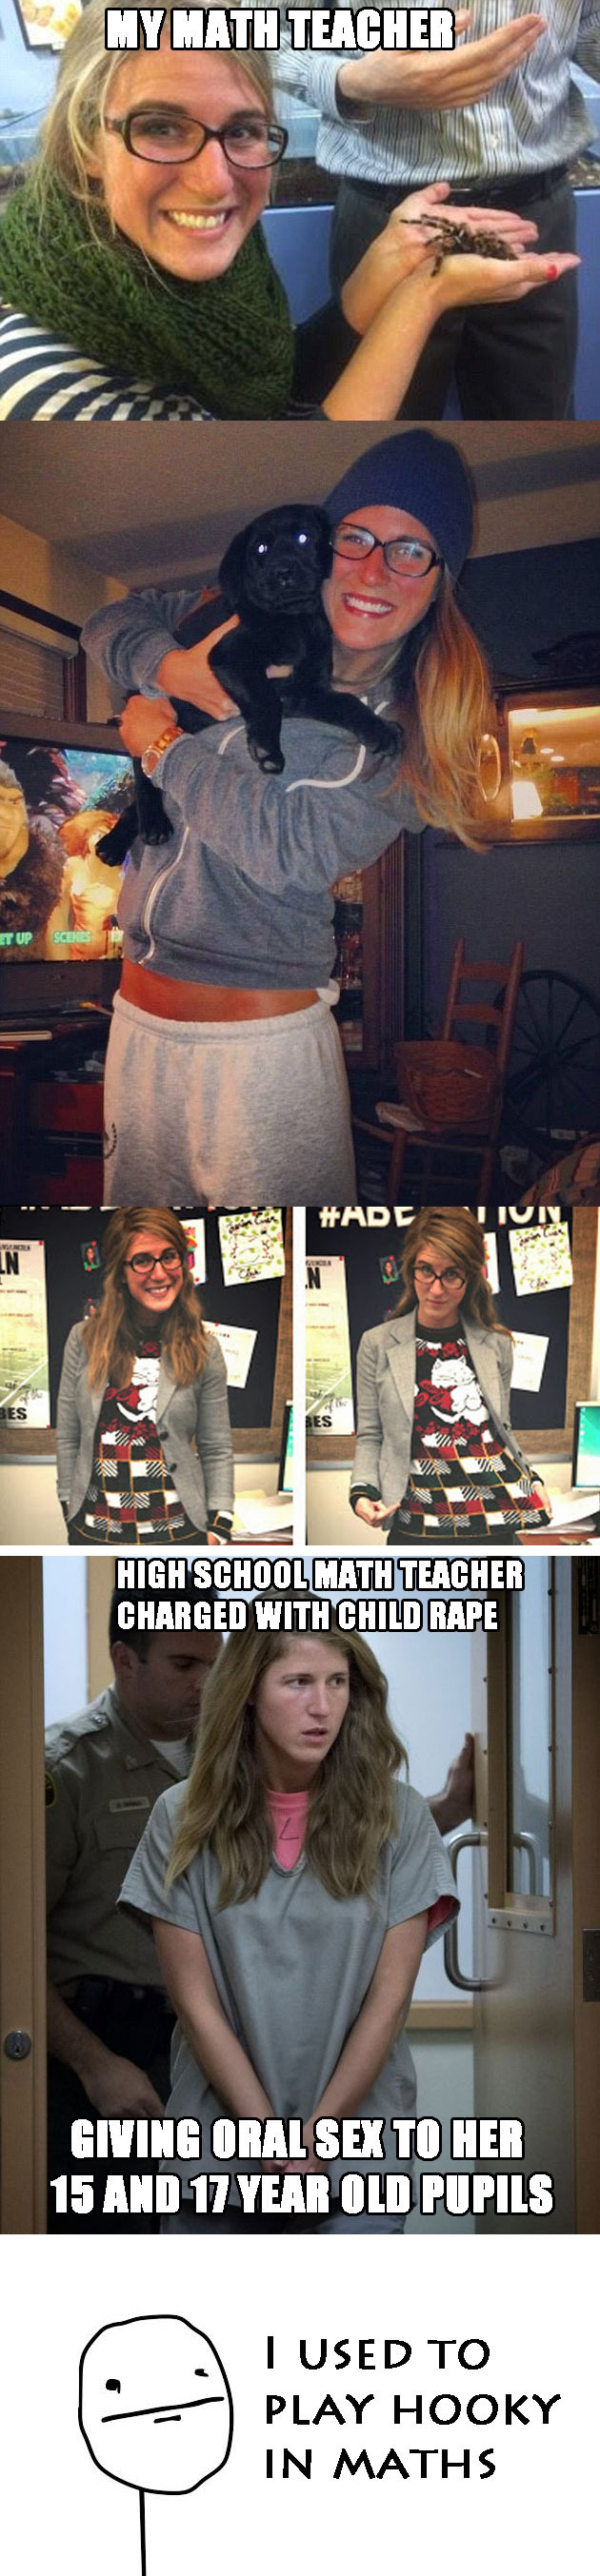 Match Teacher - meme